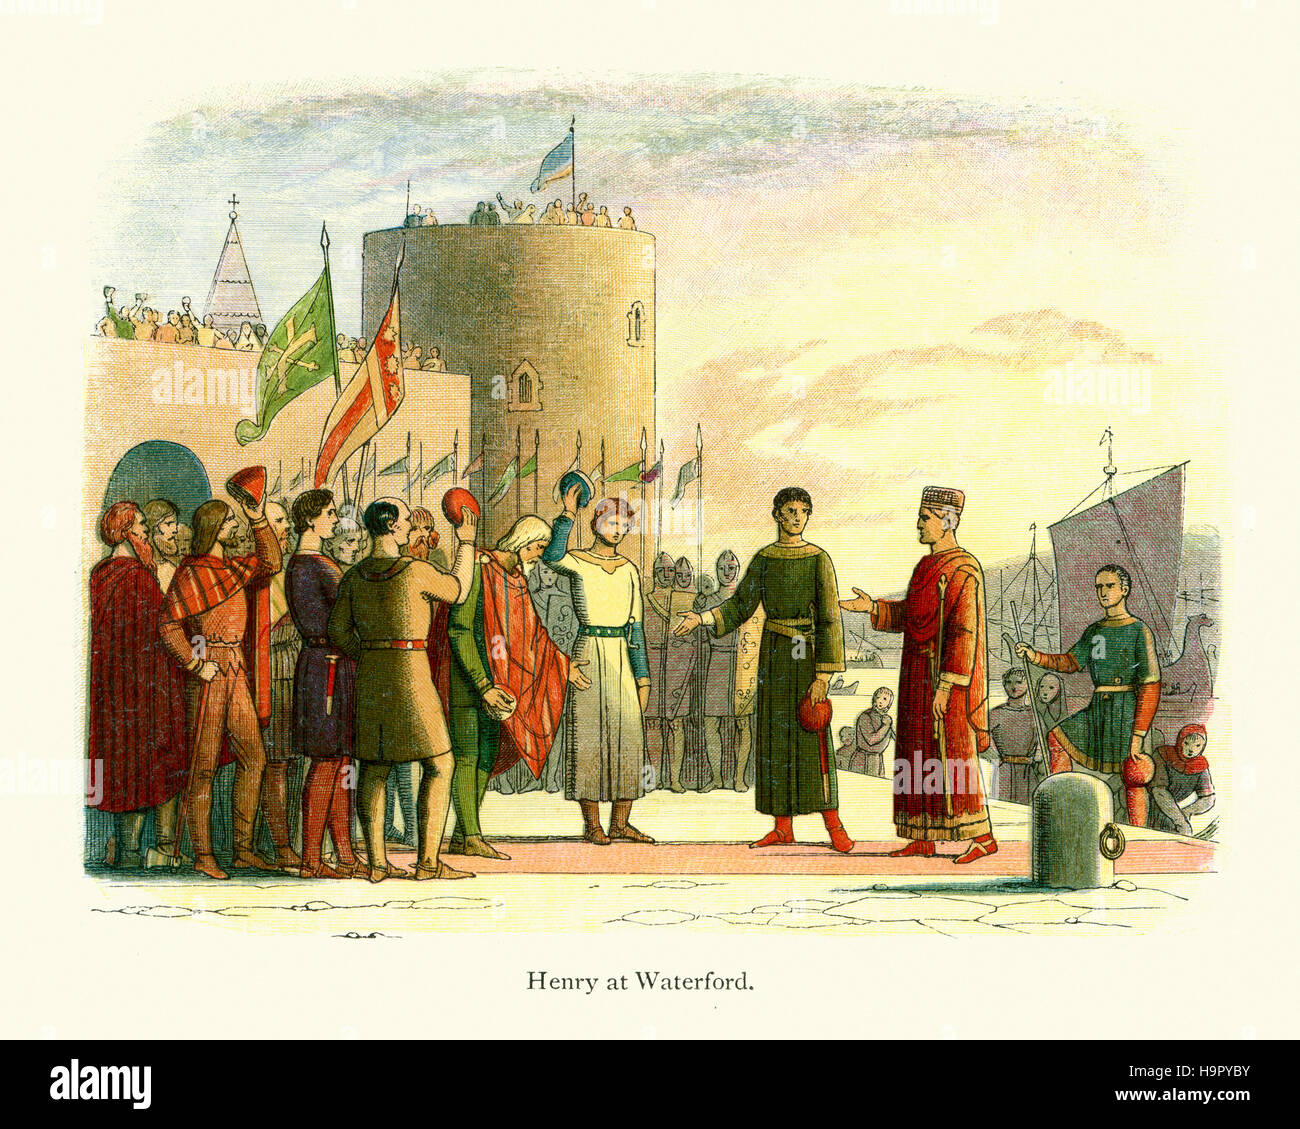 König Henry II von England Landung in Waterford in Irland. Doyle-Chronik von England Stockfoto